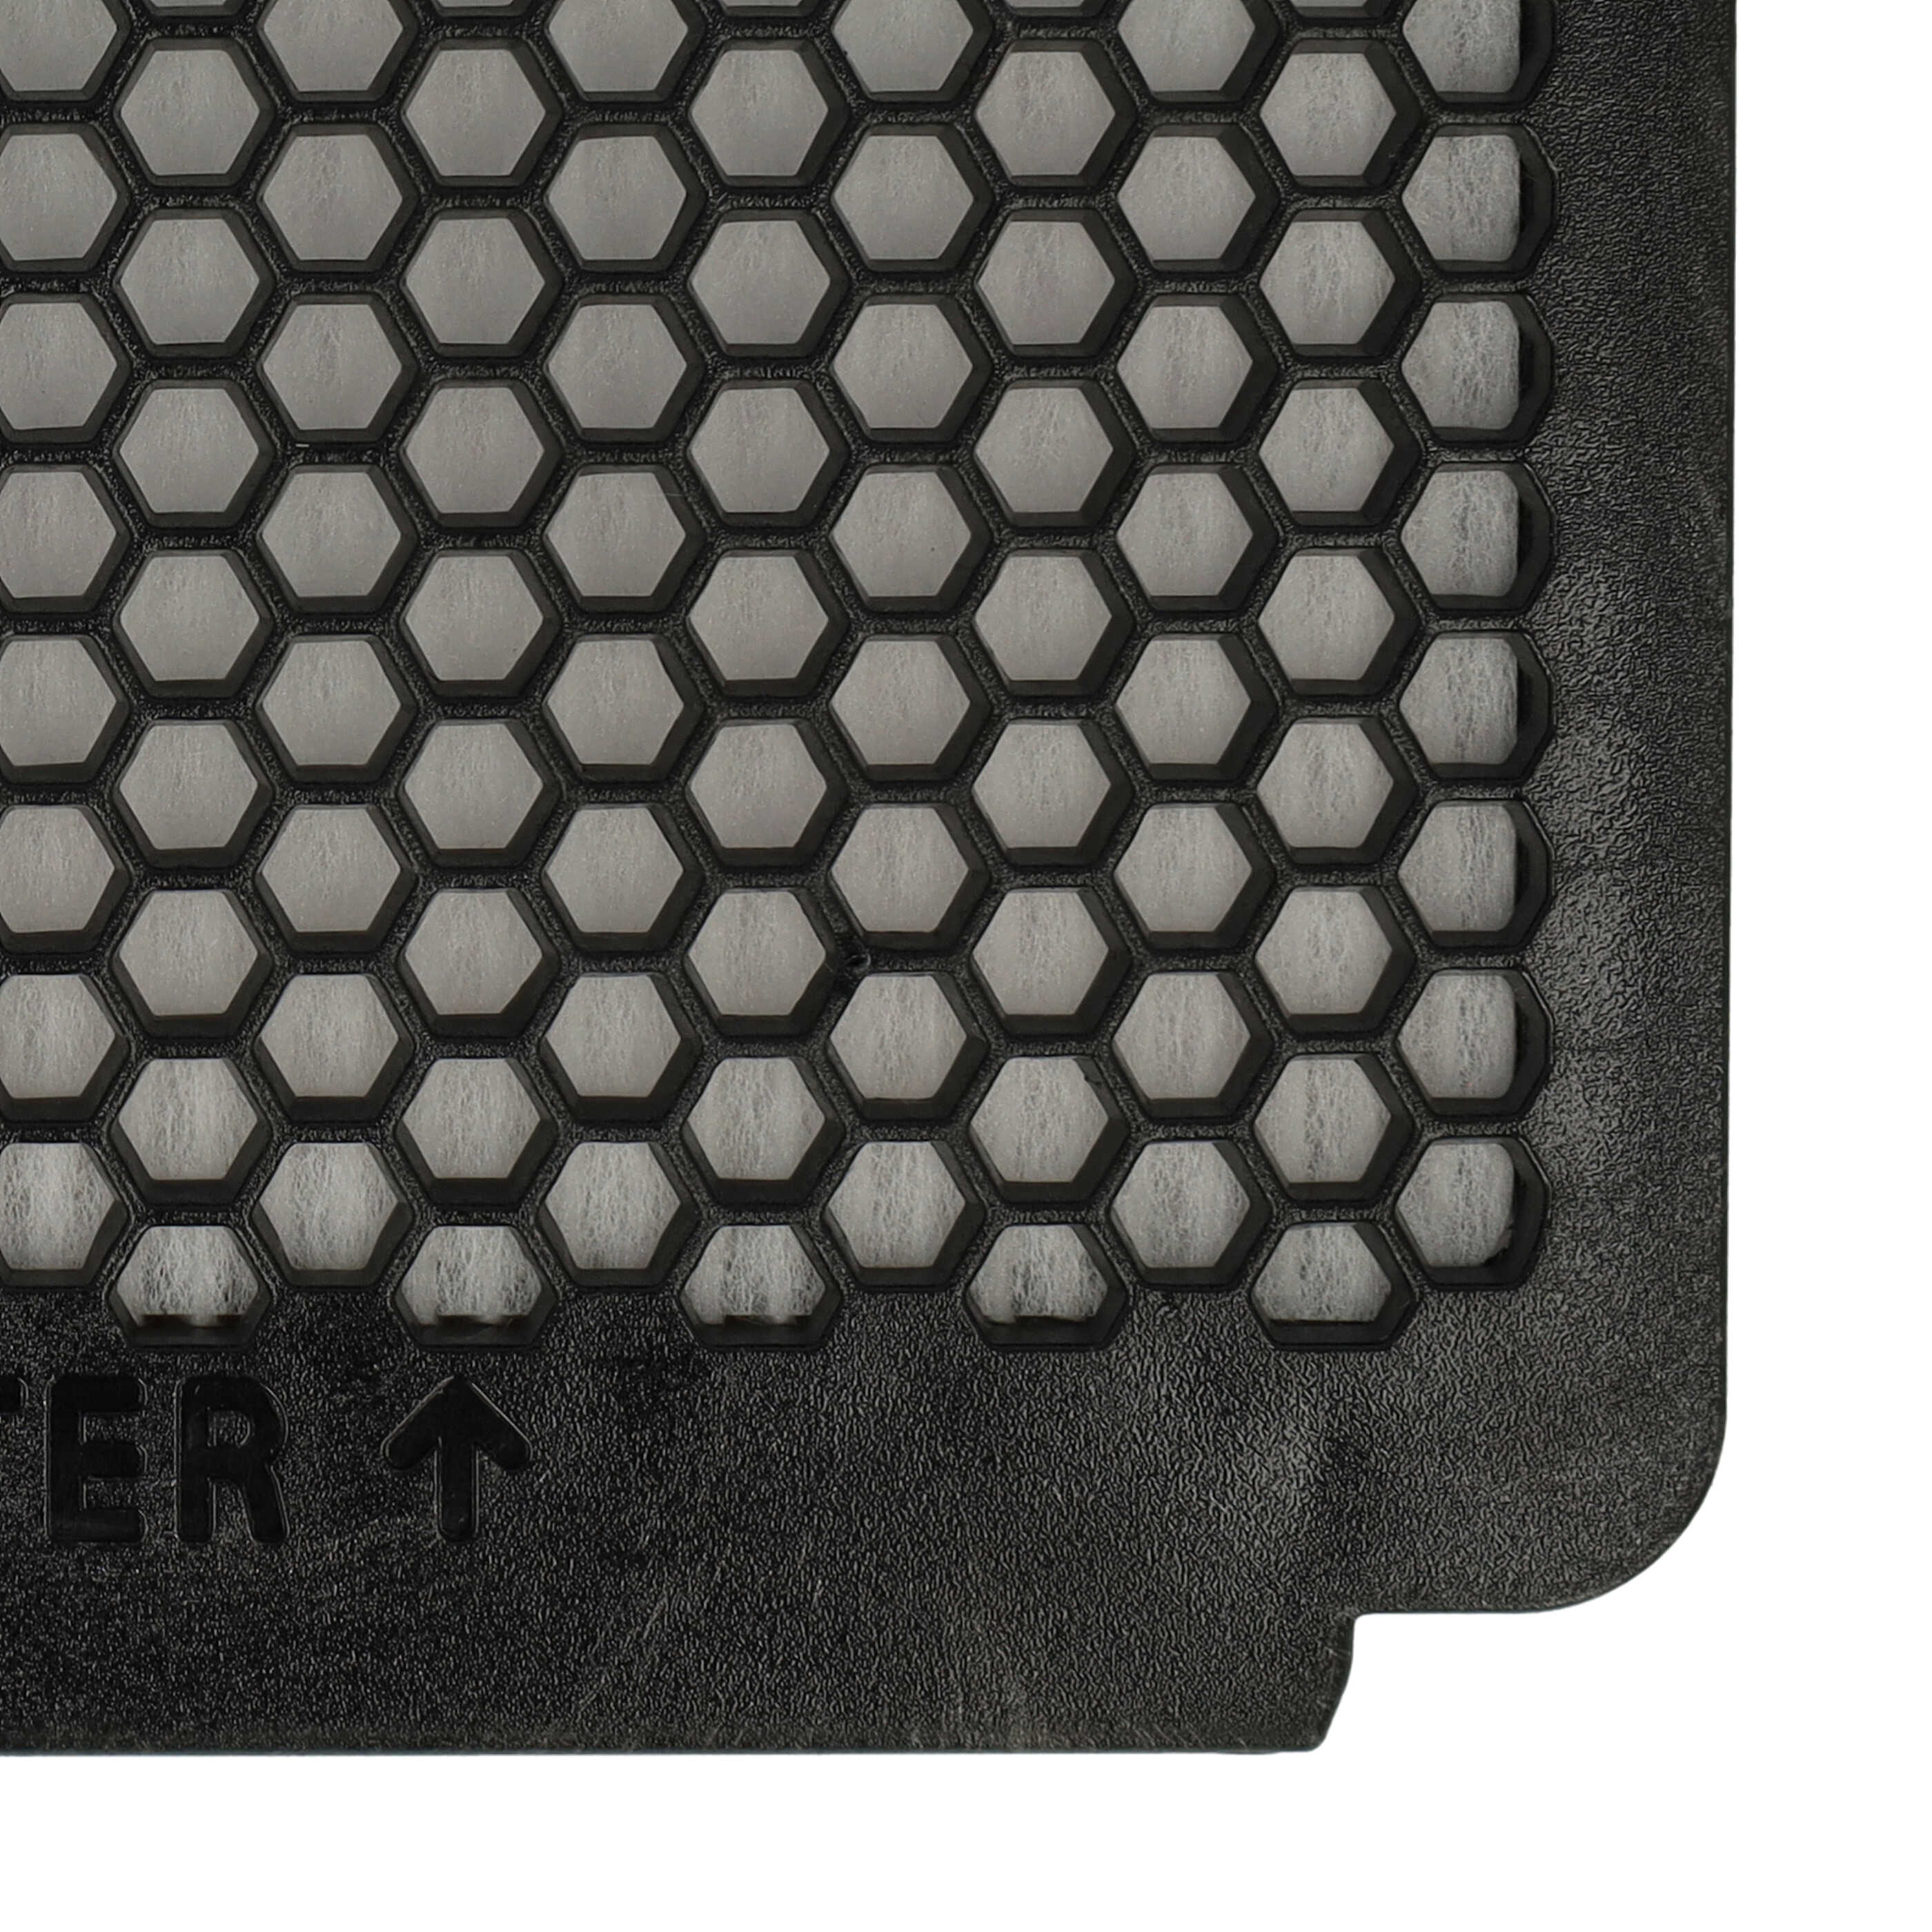 Filtro reemplaza Rowenta RS-RT4109, ZR902501 para aspiradora - filtro Hepa negro / blanco